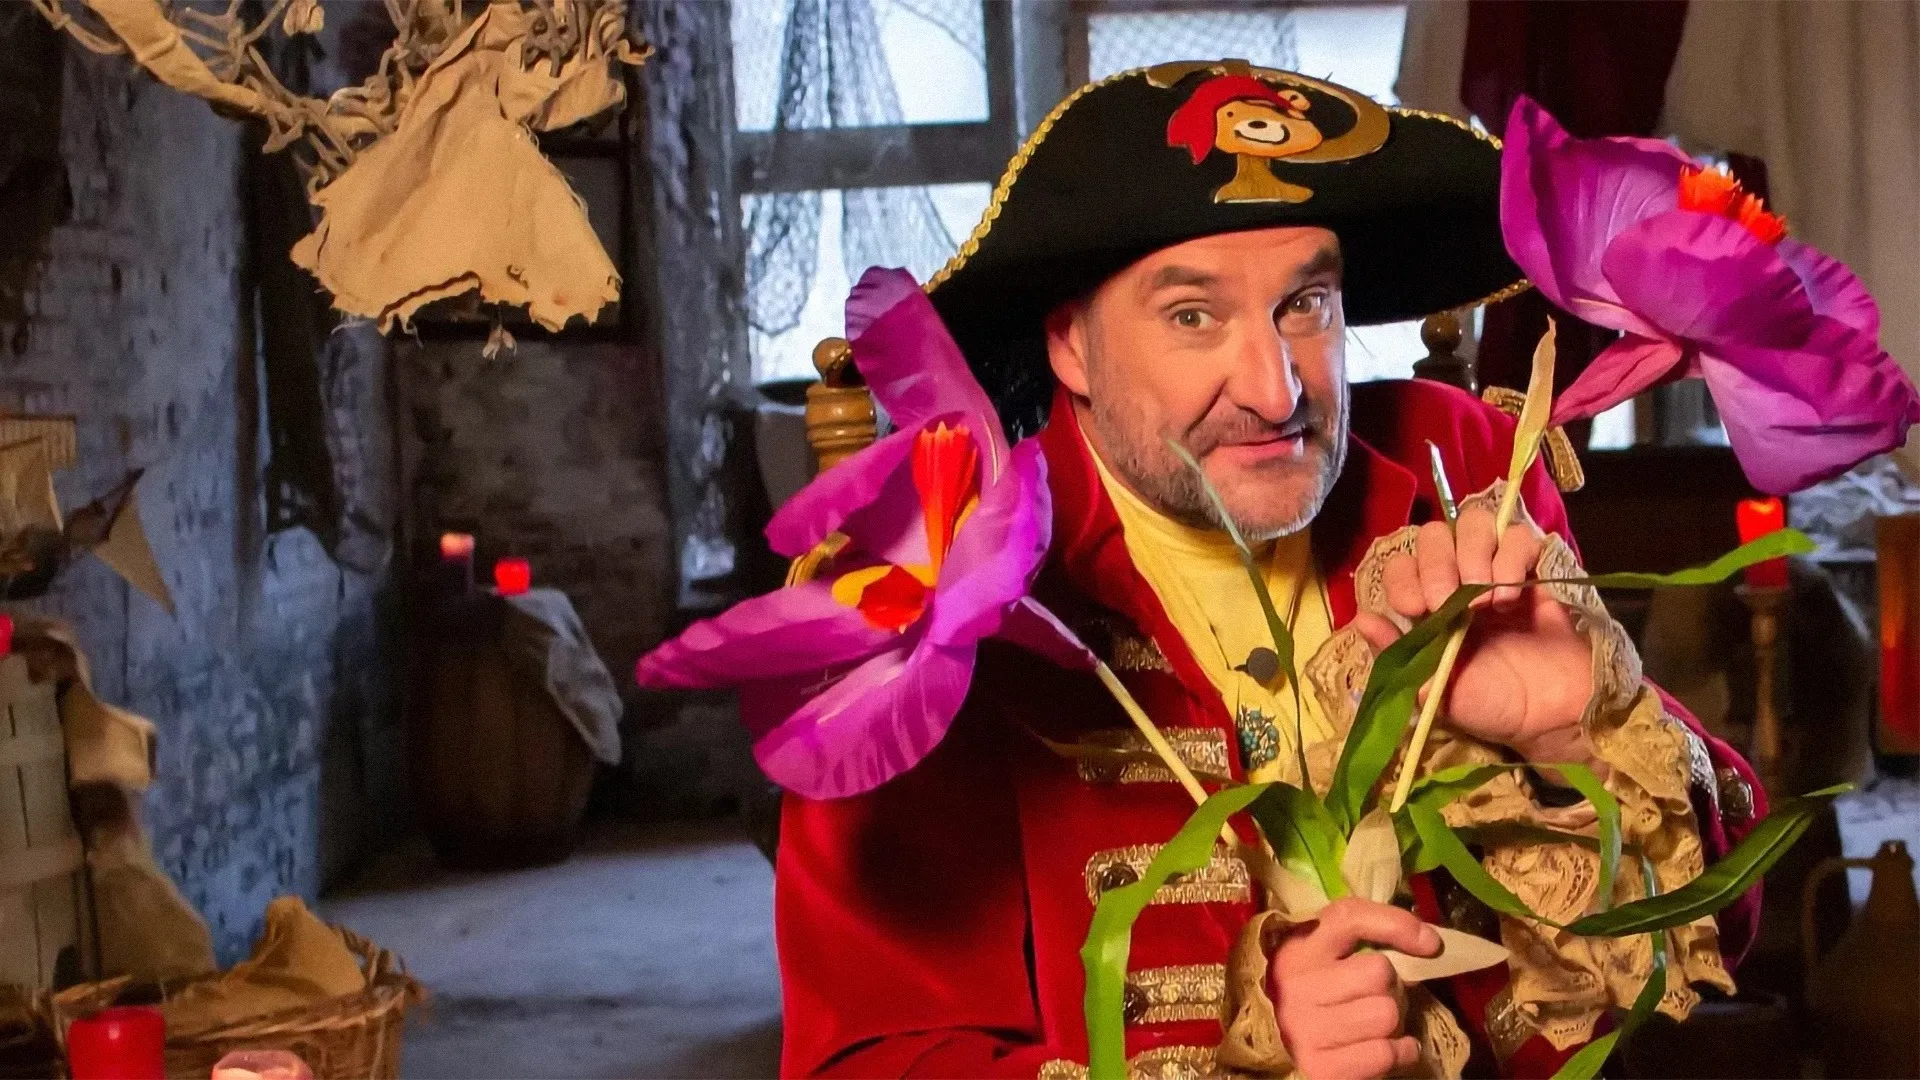 Piet Piraat Show: De Toverlantaarn